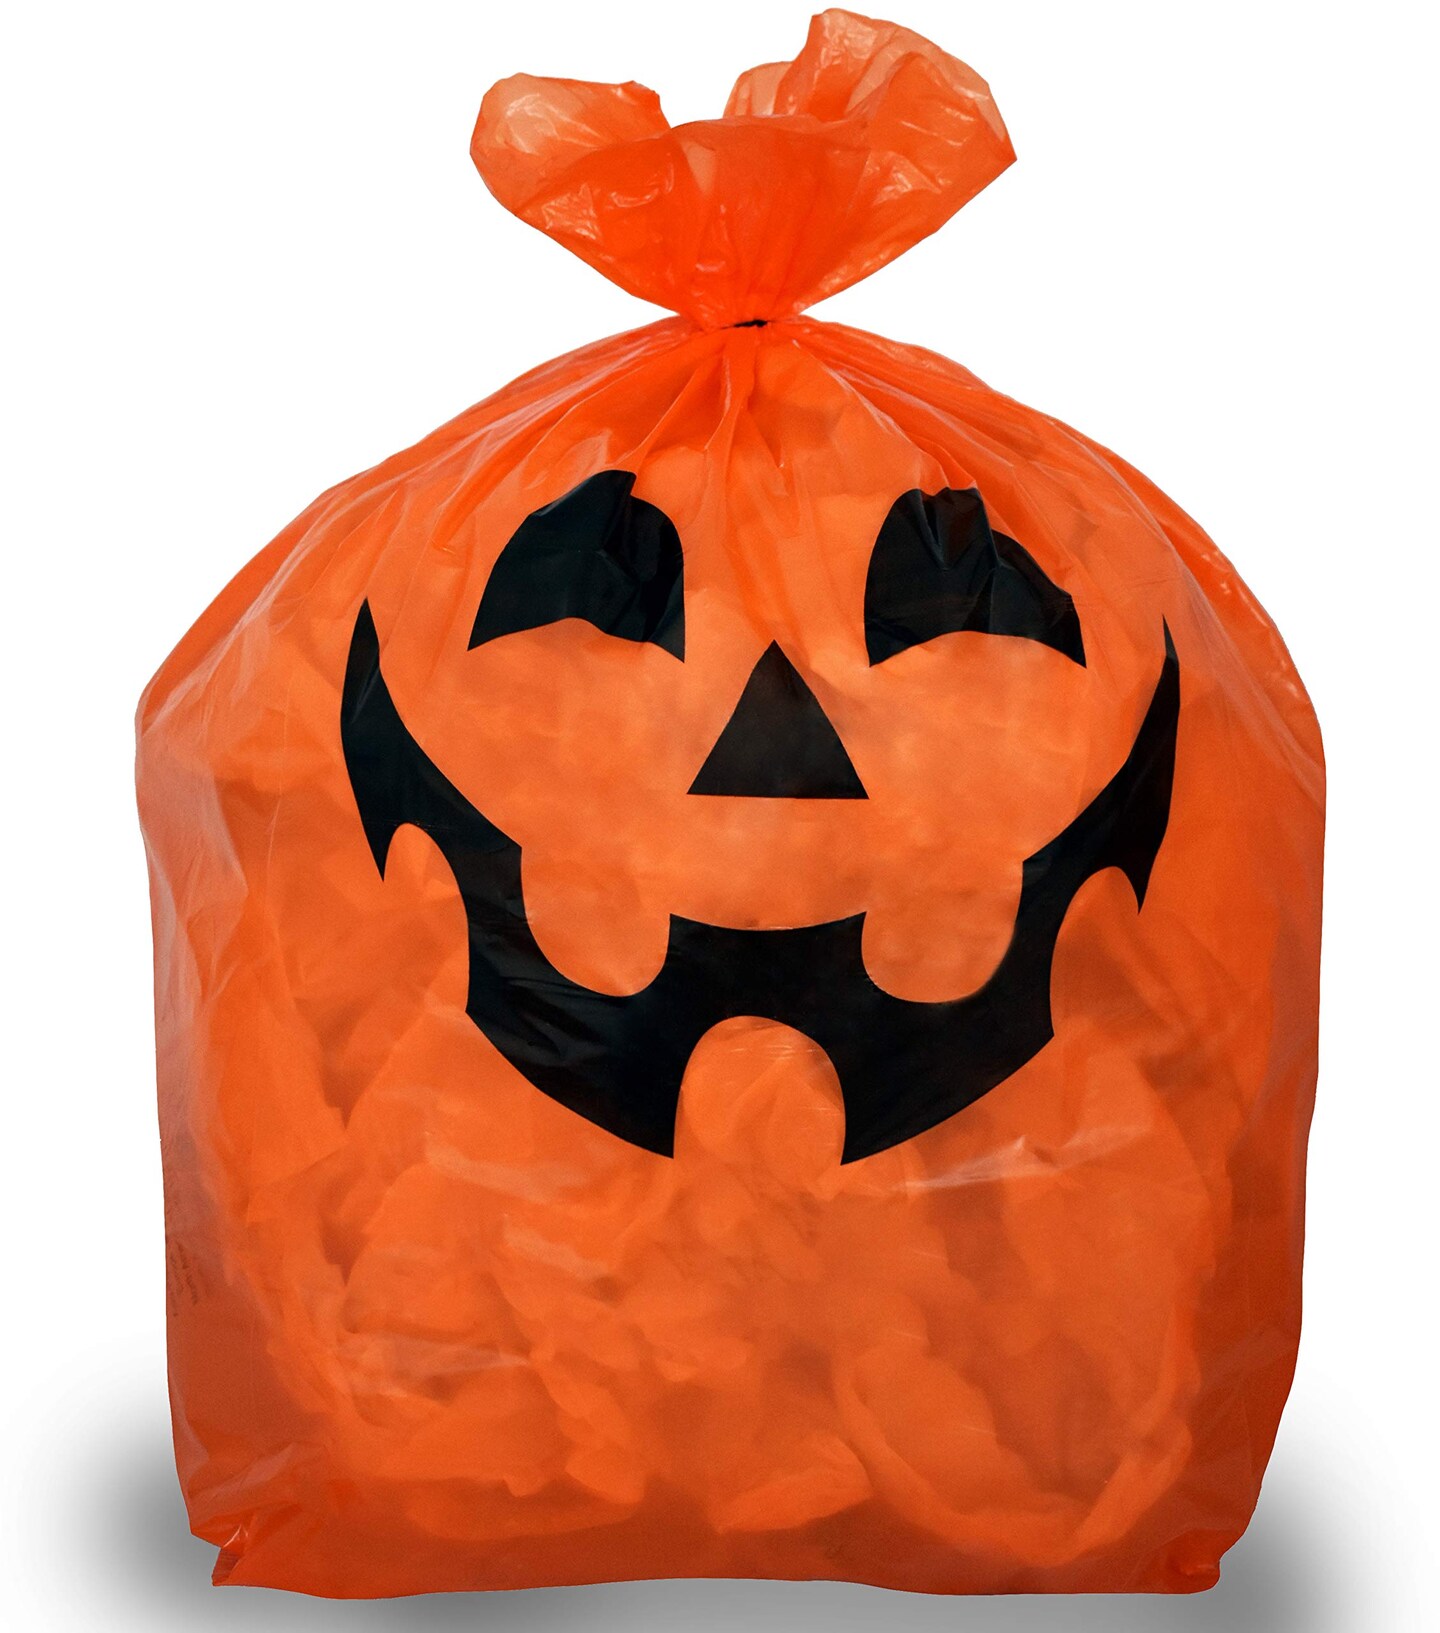 Pumpkin Leaf Bags Decorations - Jack O Lantern Outdoor Yard Fall